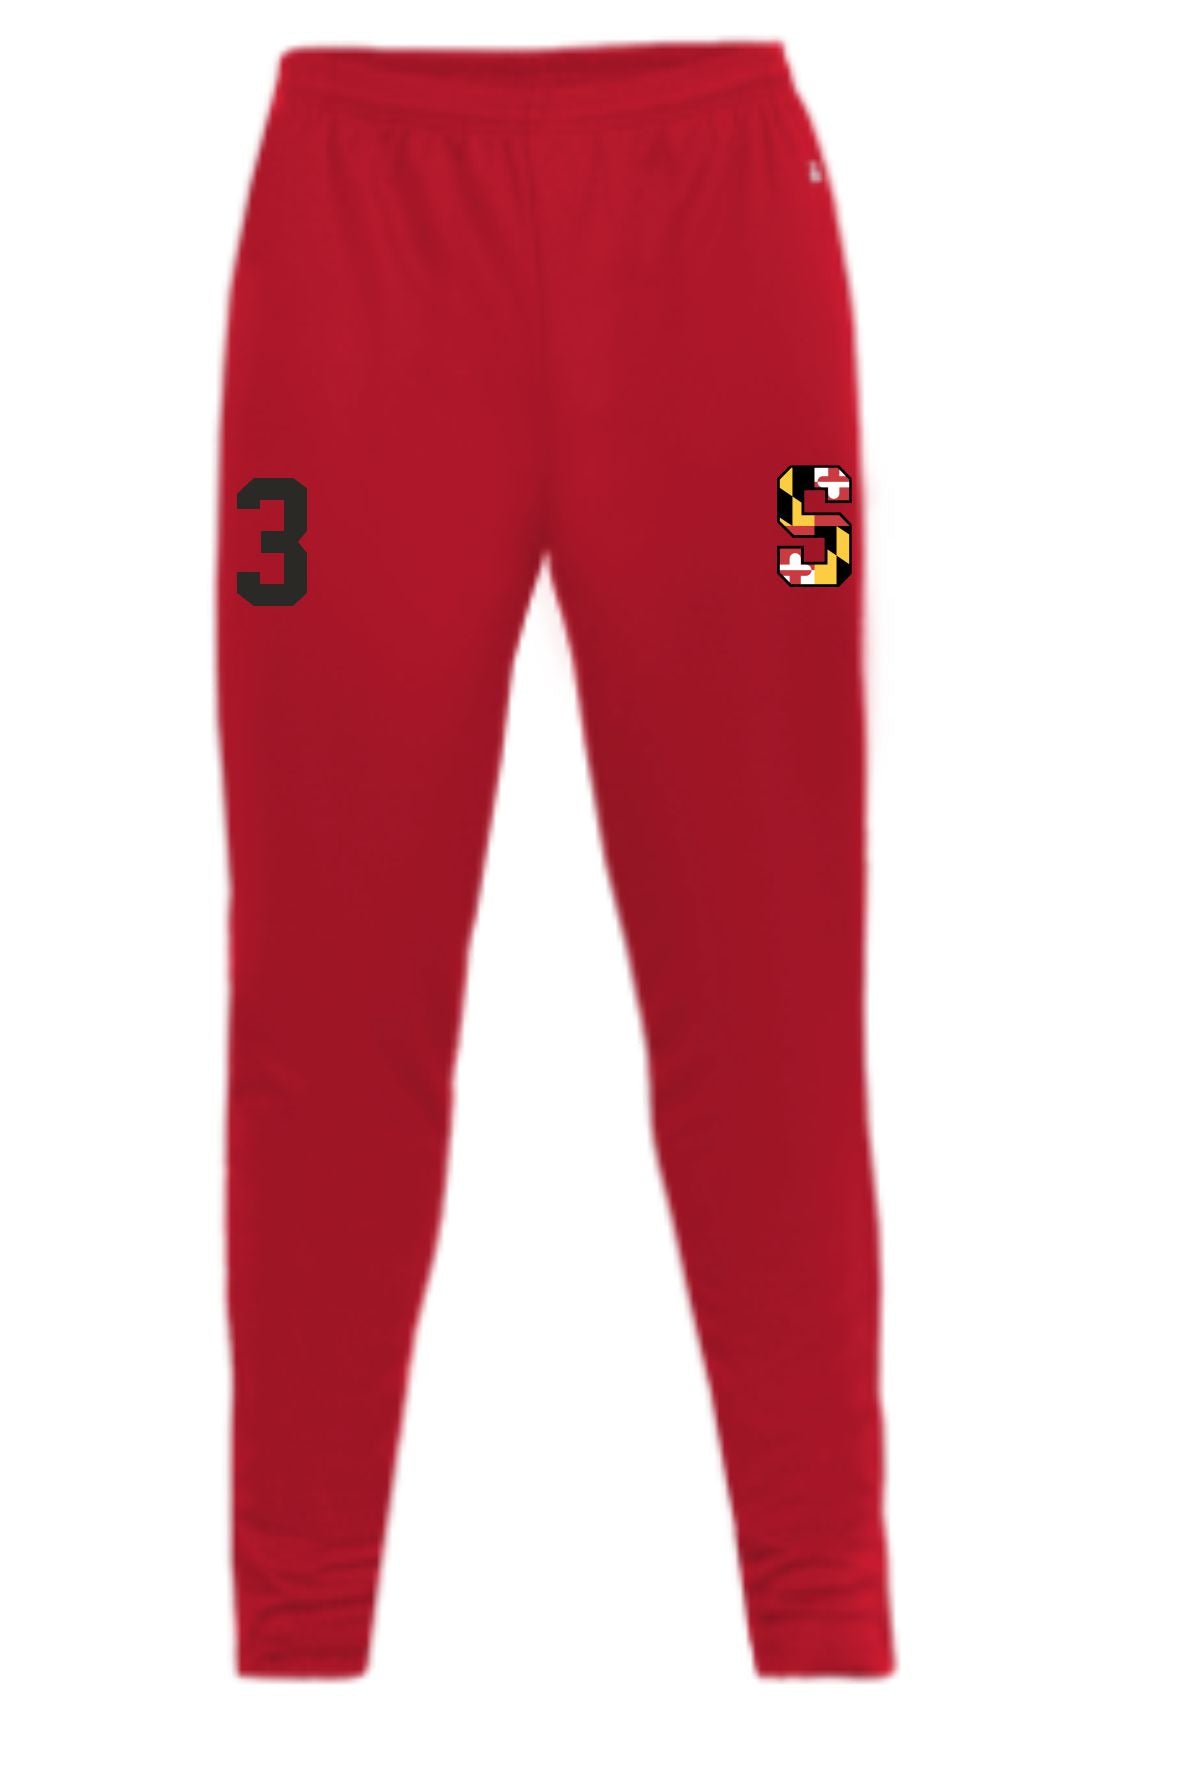 Senators Badger Trainer Pants - 3 colors available